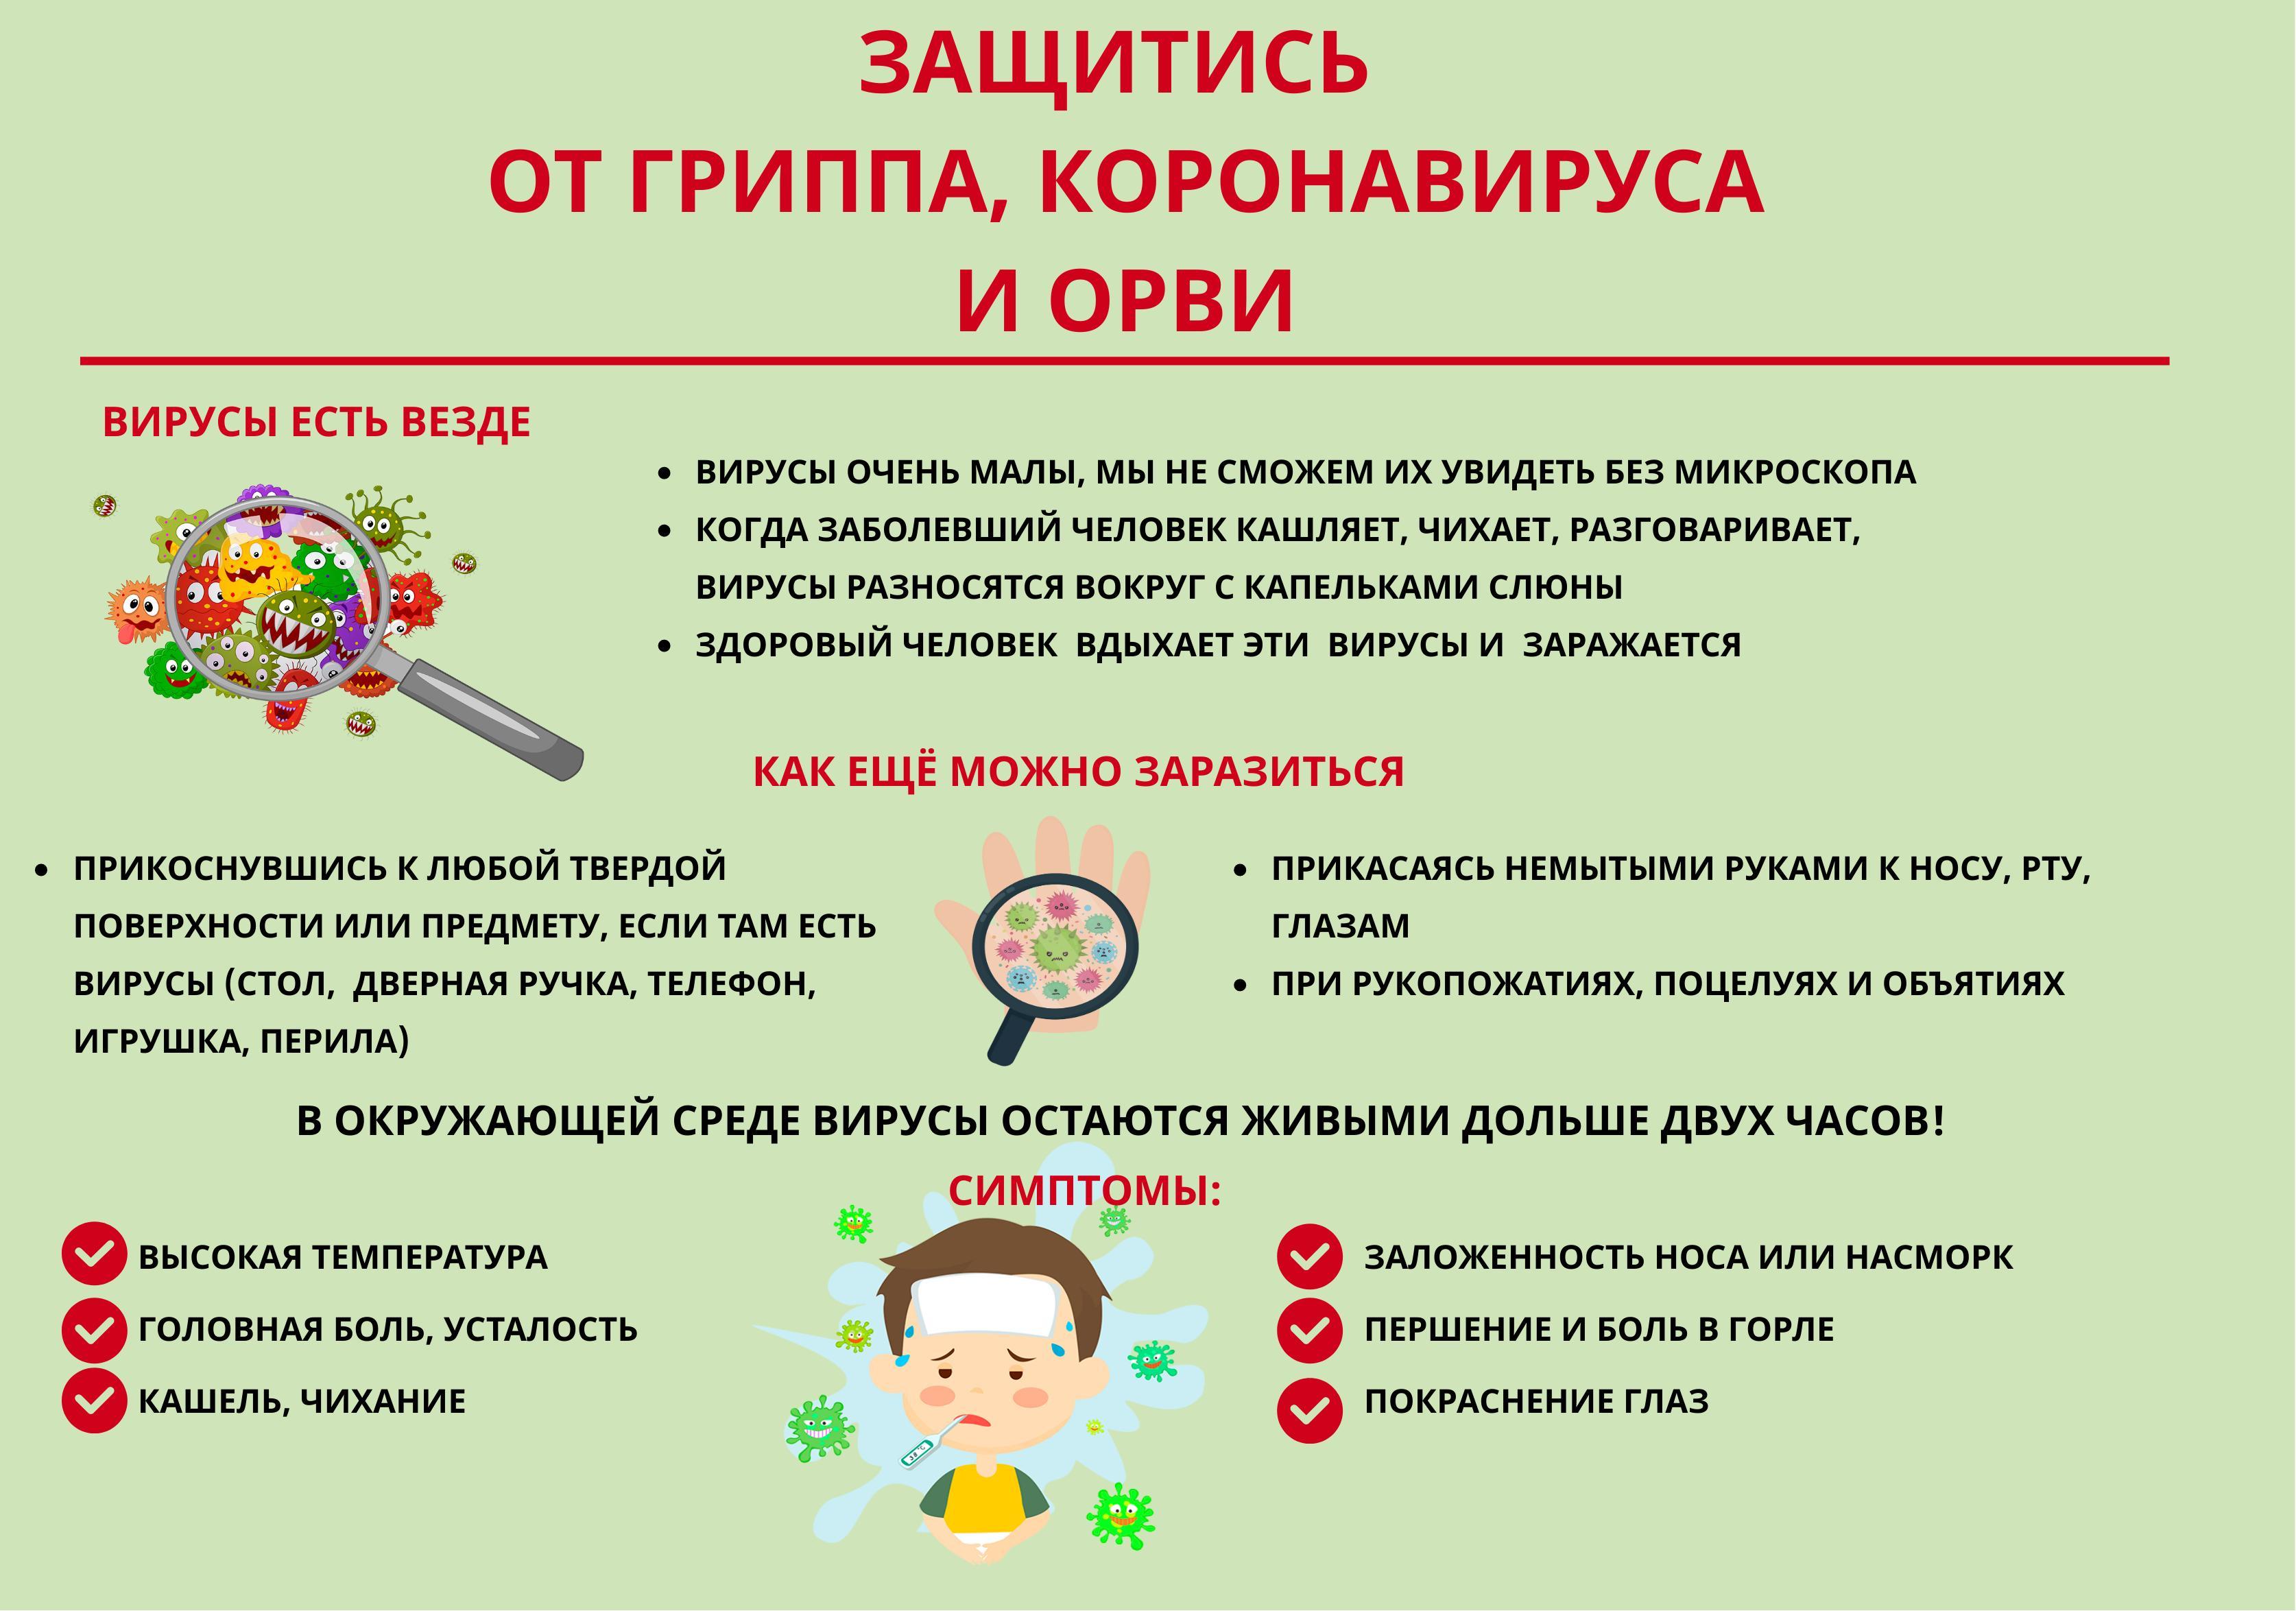 https://ds1eka.ucoz.ru/dokumenty/koronavirus_pamjatka.jpg